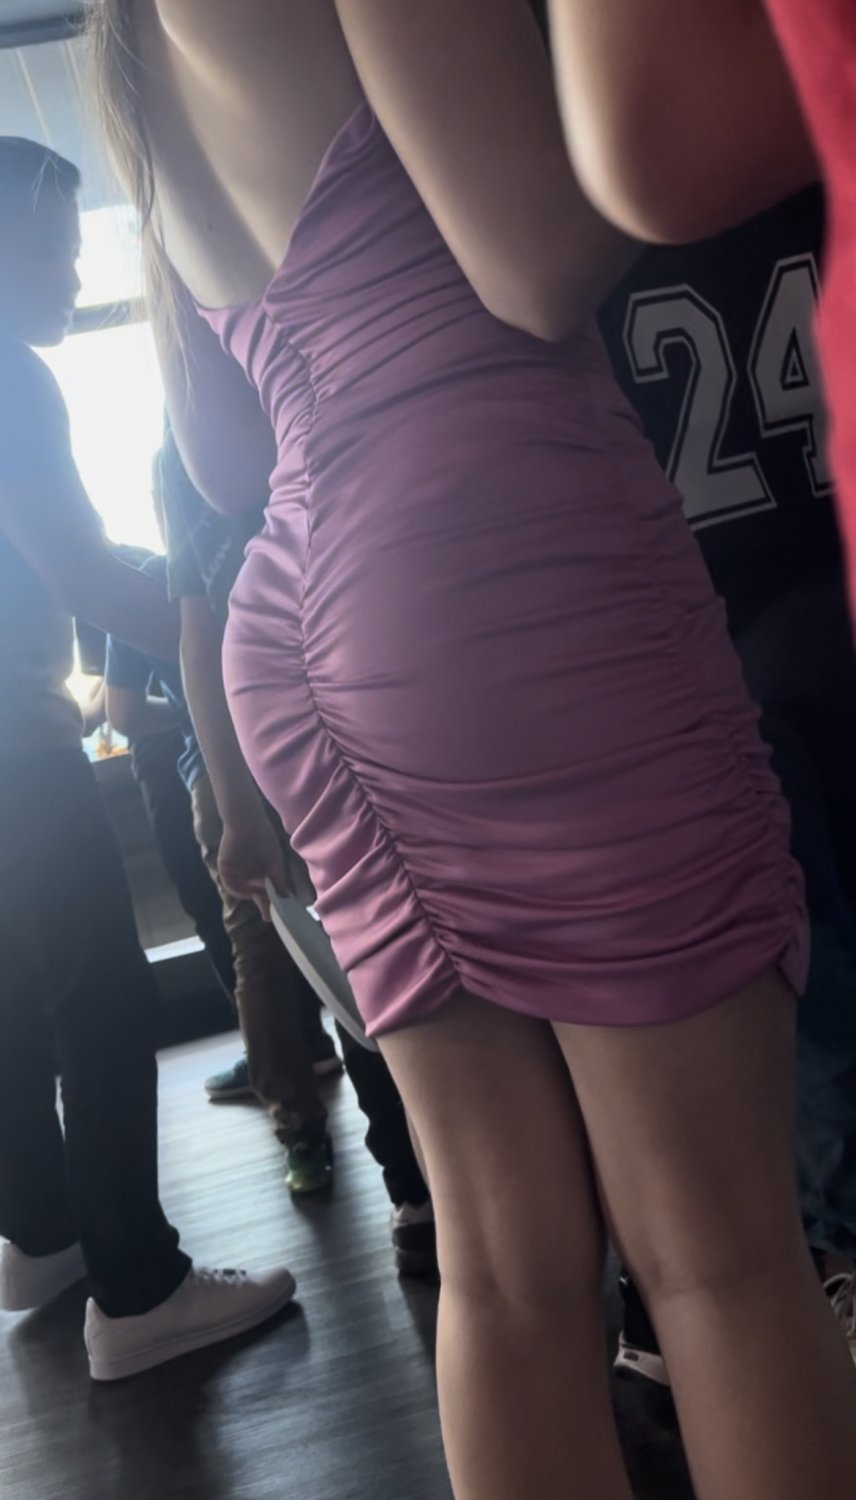 Hot teen ass tight dress - Porn Videos & Photos - EroMe